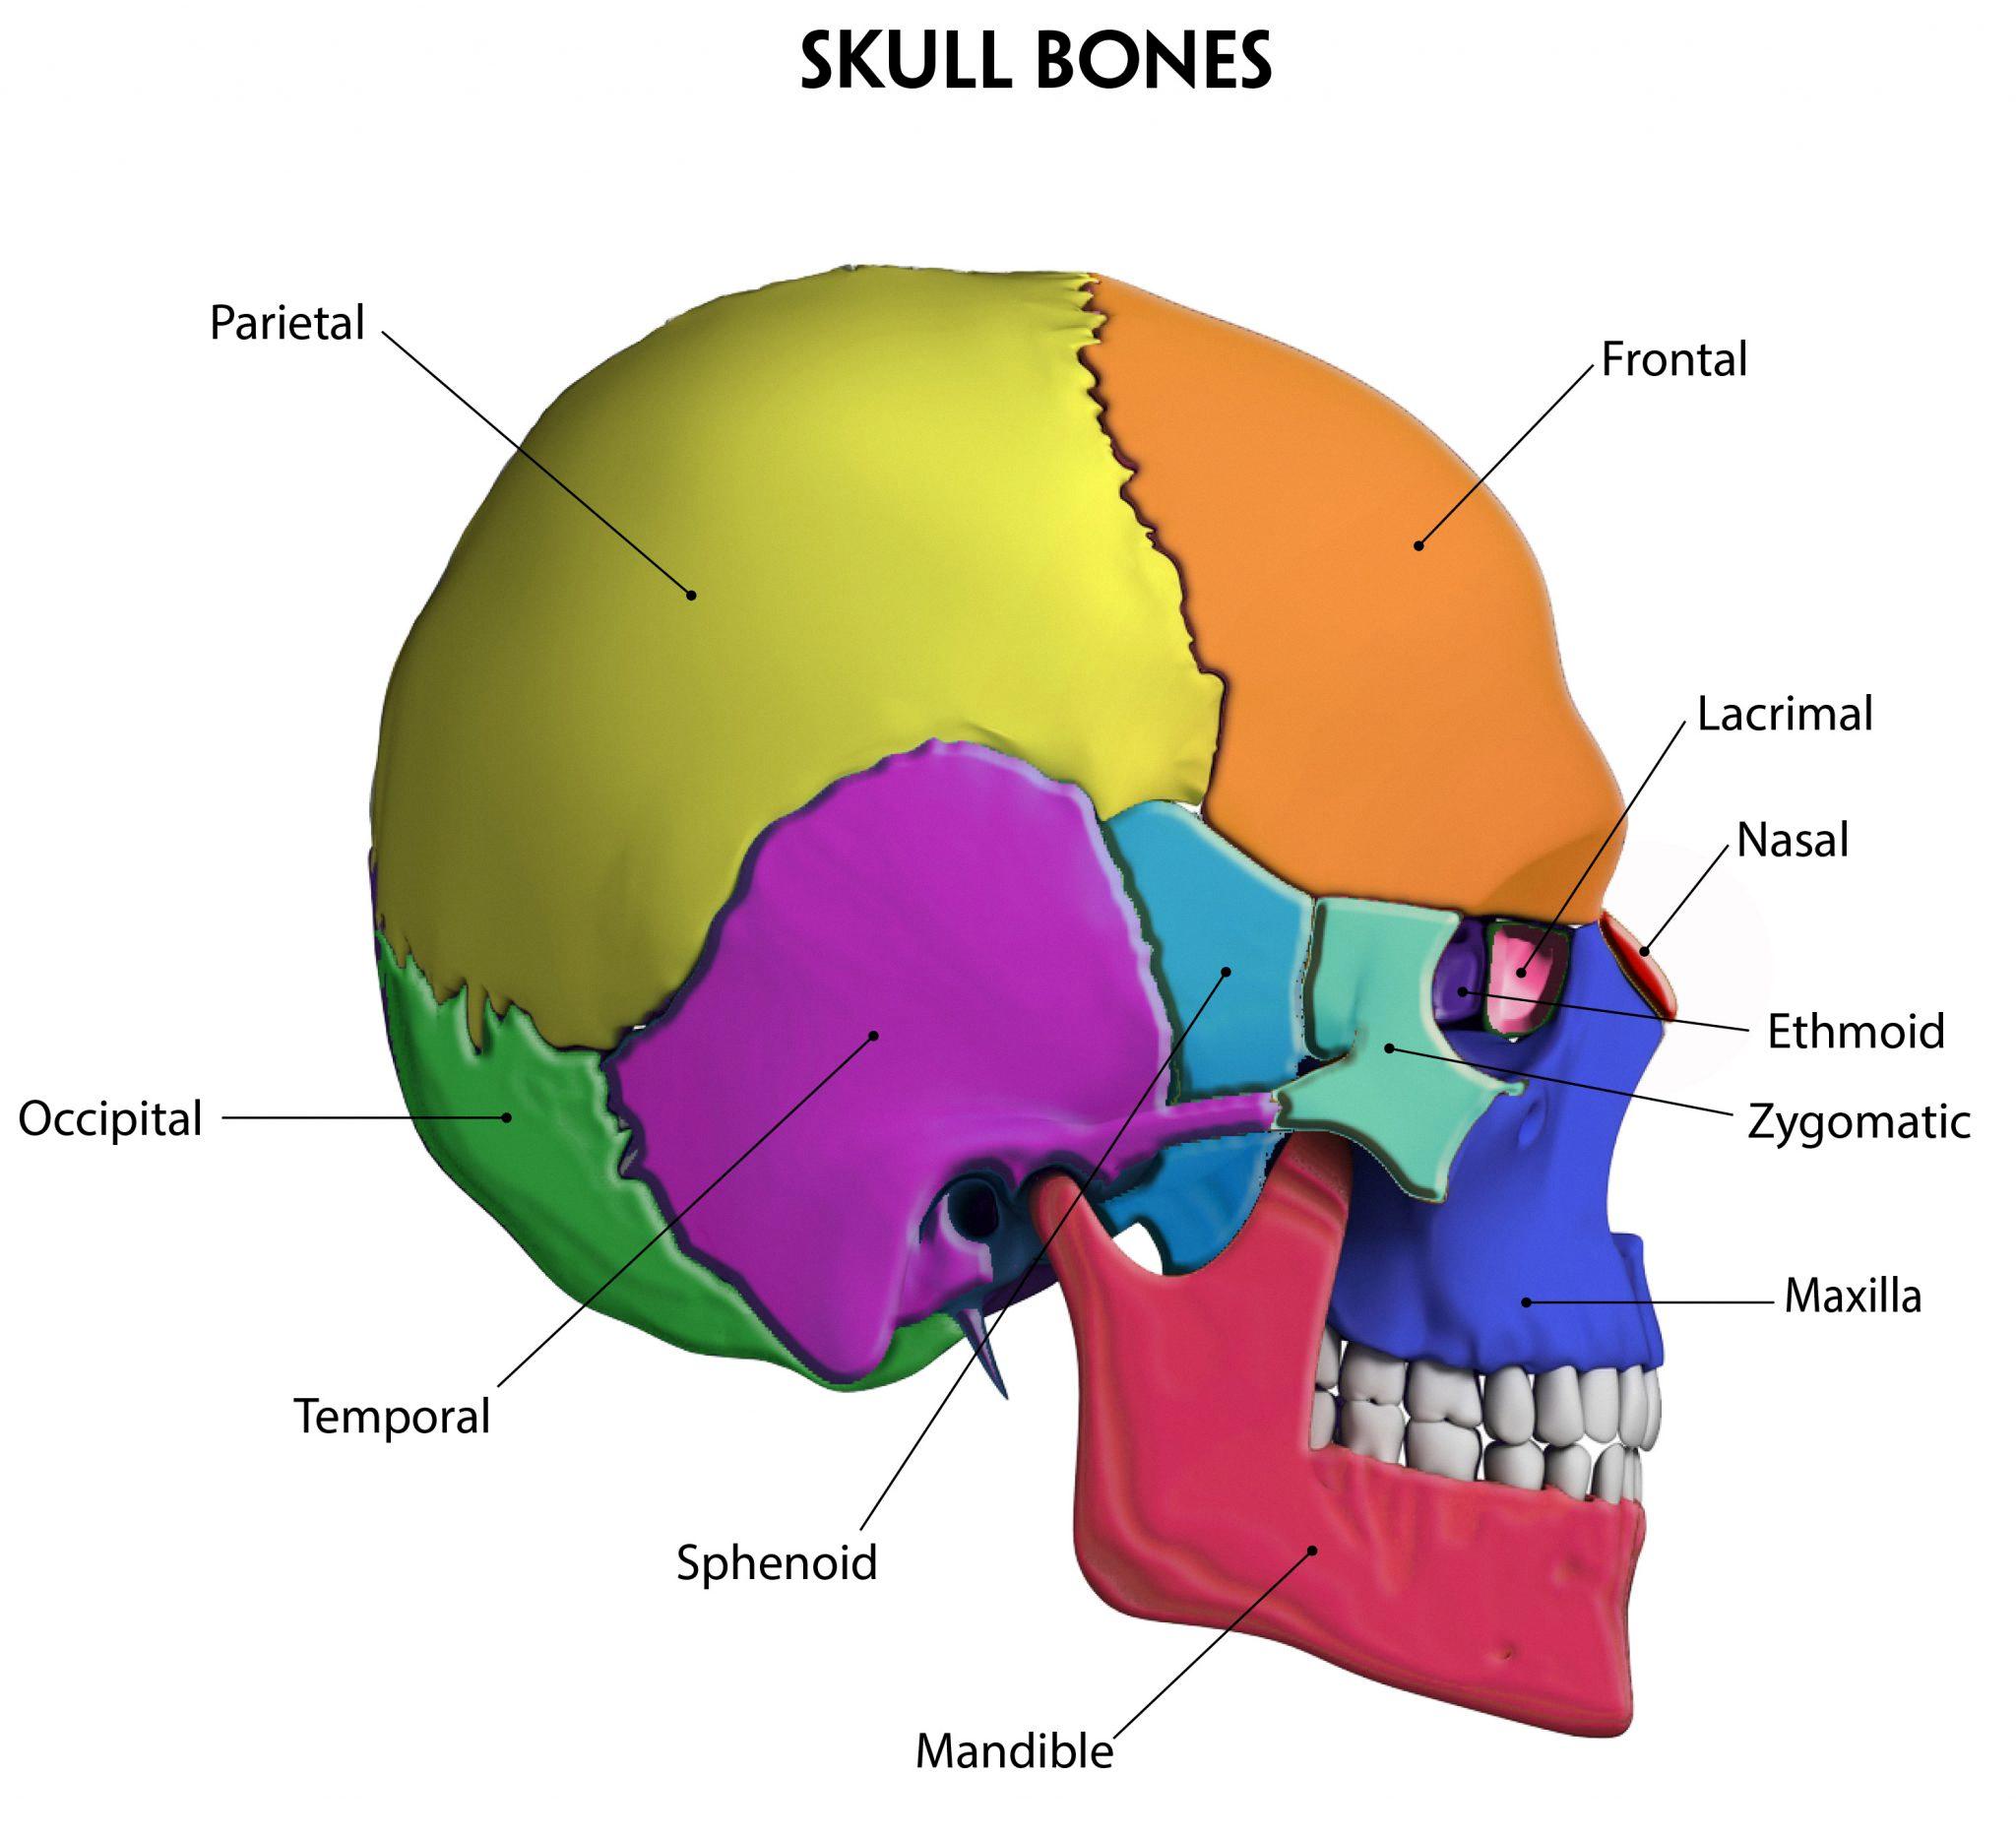 cranial bones develop